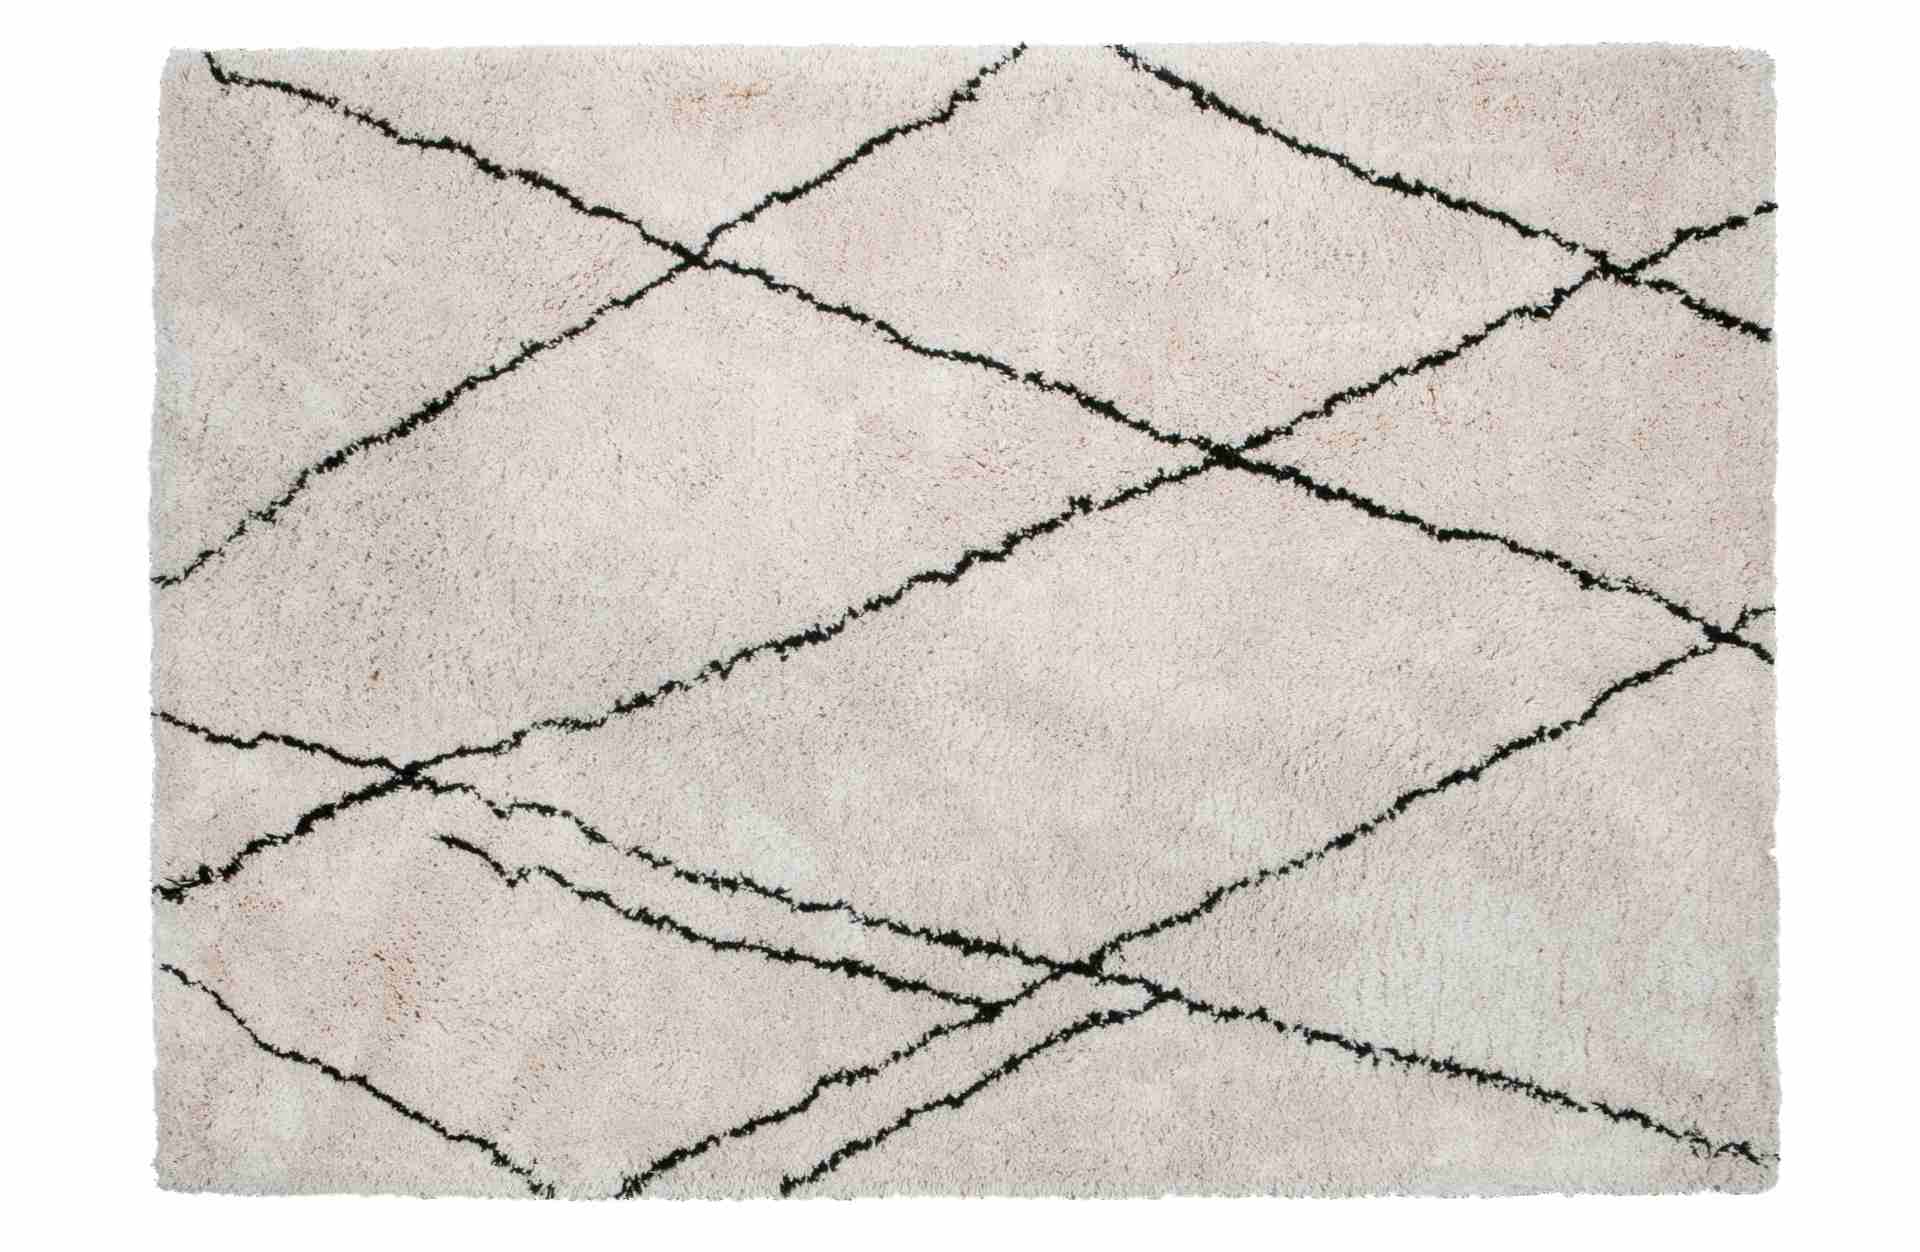 Der Teppich Cleo überzeugt mit seinem klassischen Design. Gefertigt wurde er aus einem Mix von Kunststoff und Baumwolle, welche einen weißen Farbton besitzen. Der Teppich besitzt eine Größe von 170x240 cm.